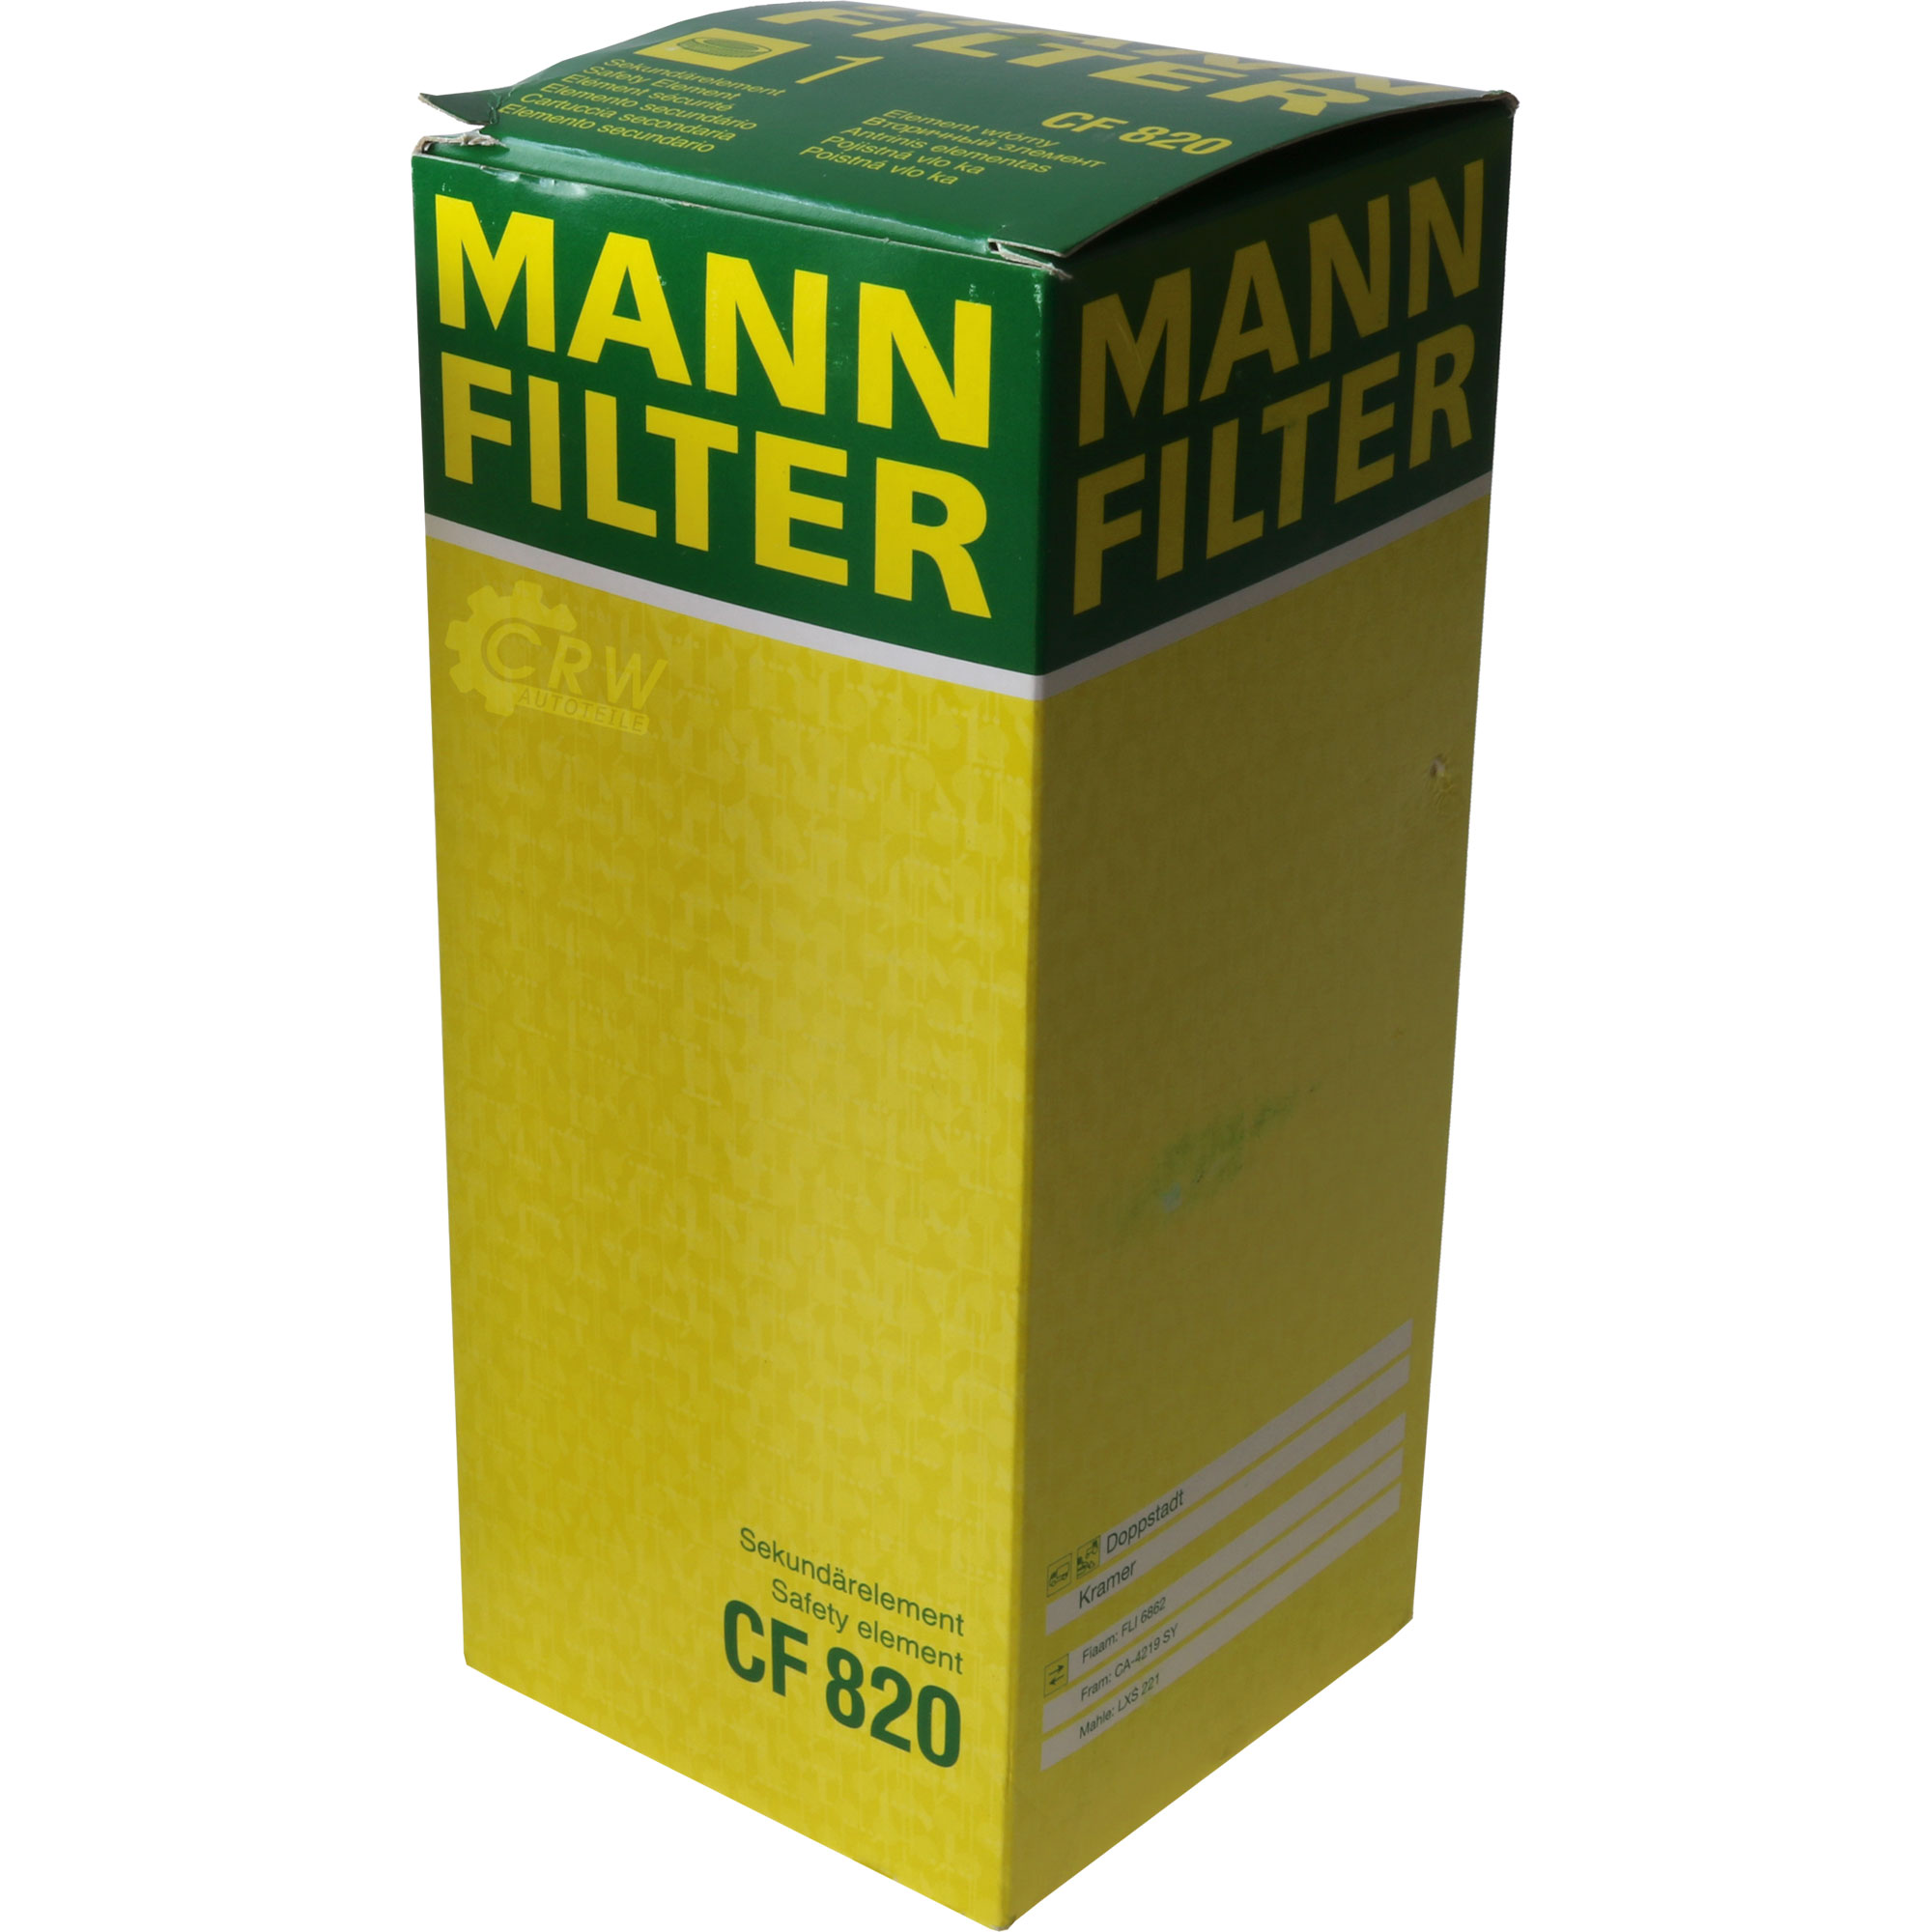 MANN-FILTER Sekundärluftfilter CF 820